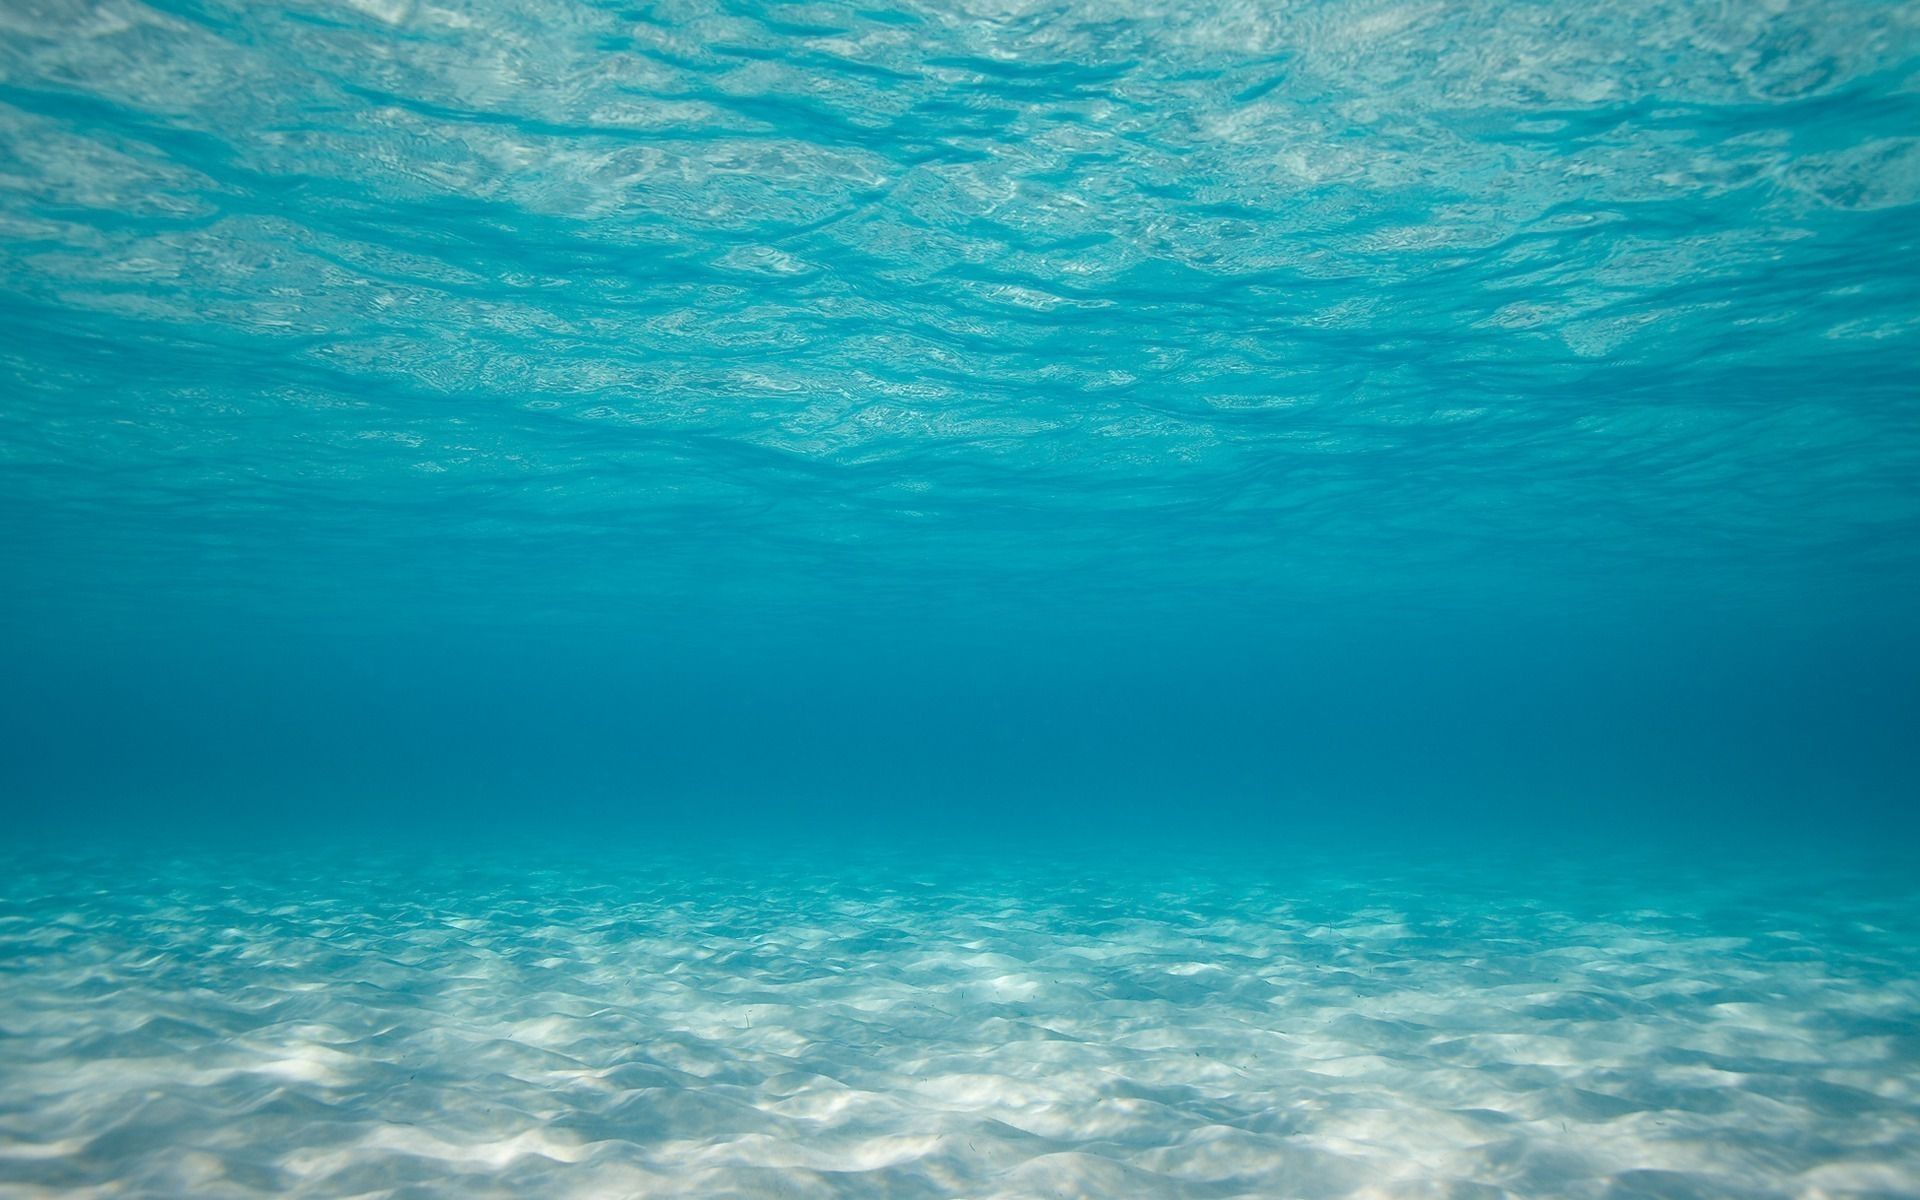 Bing Wallpapers HD Pictures Download.  Bokeh wallpaper, Hawaii ocean,  Underwater photography